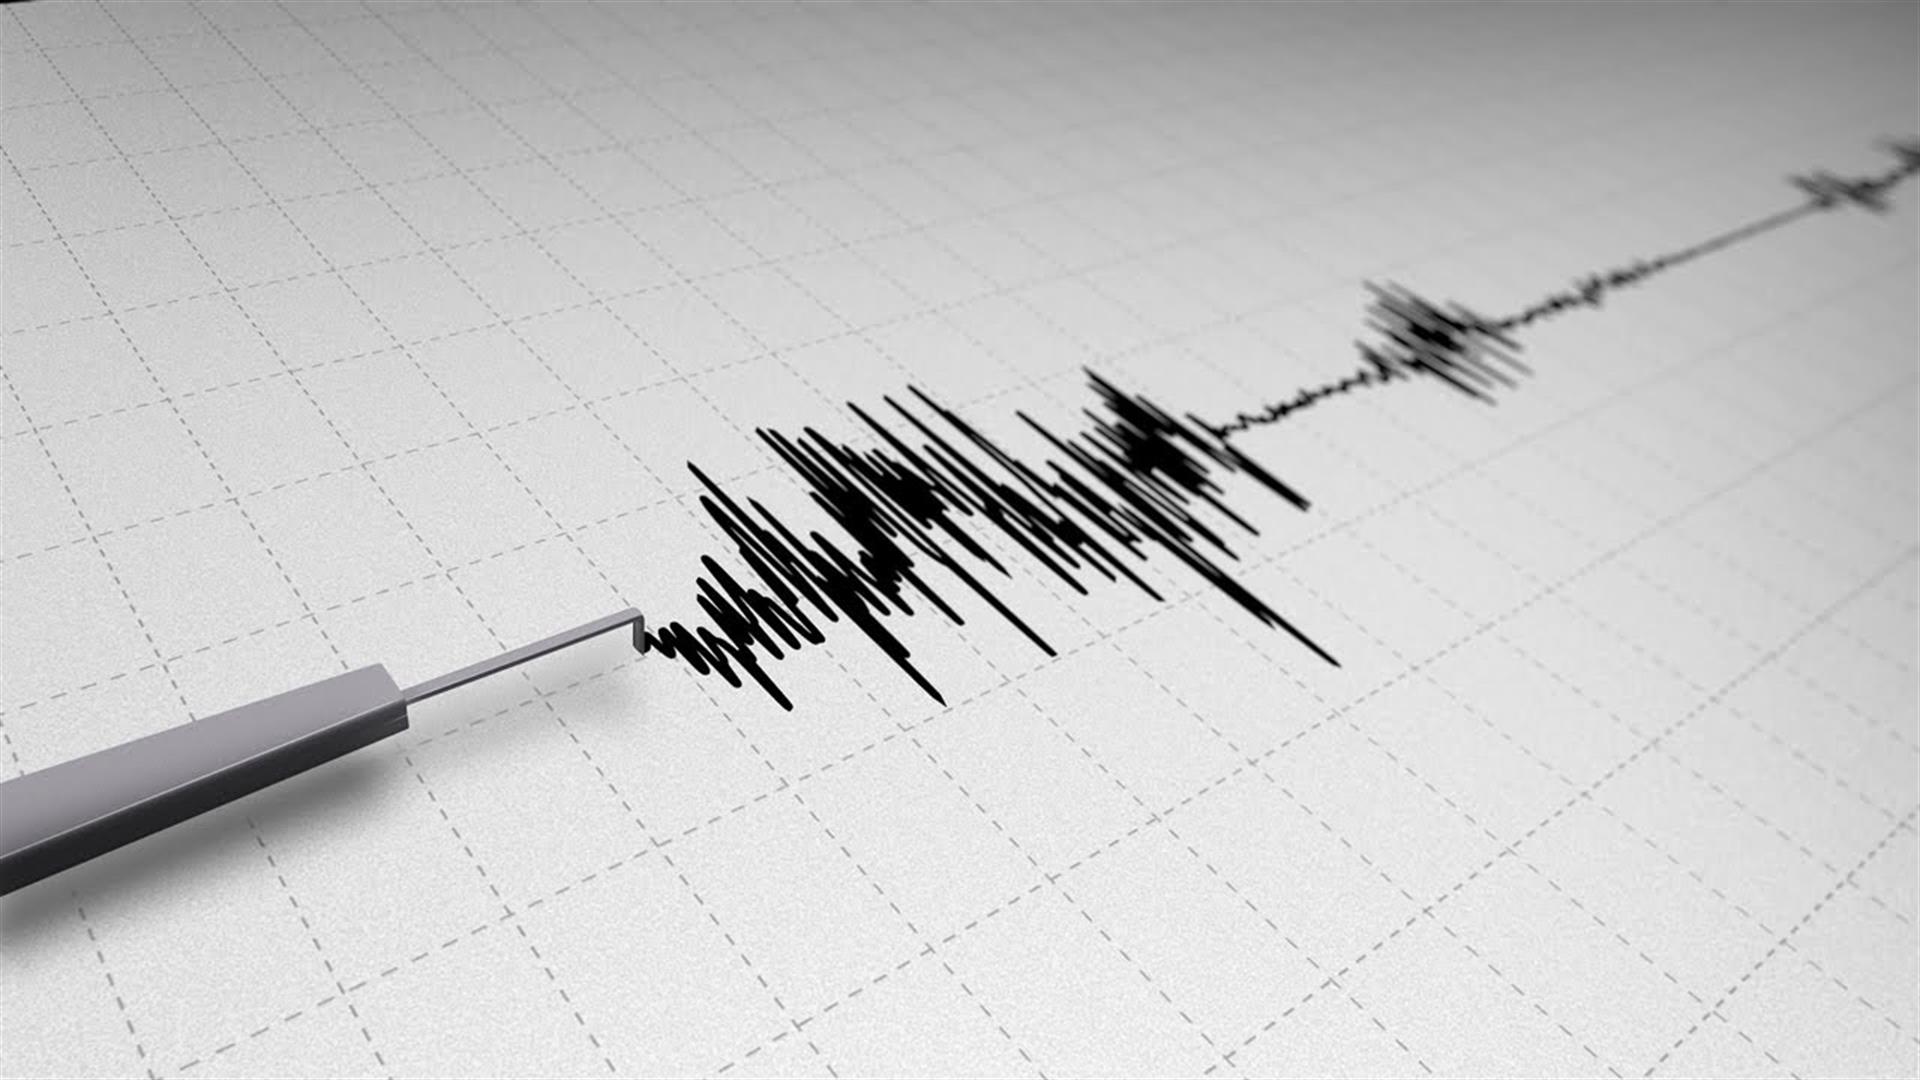 Şili de 5,2 büyüklüğünde deprem meydana geldi